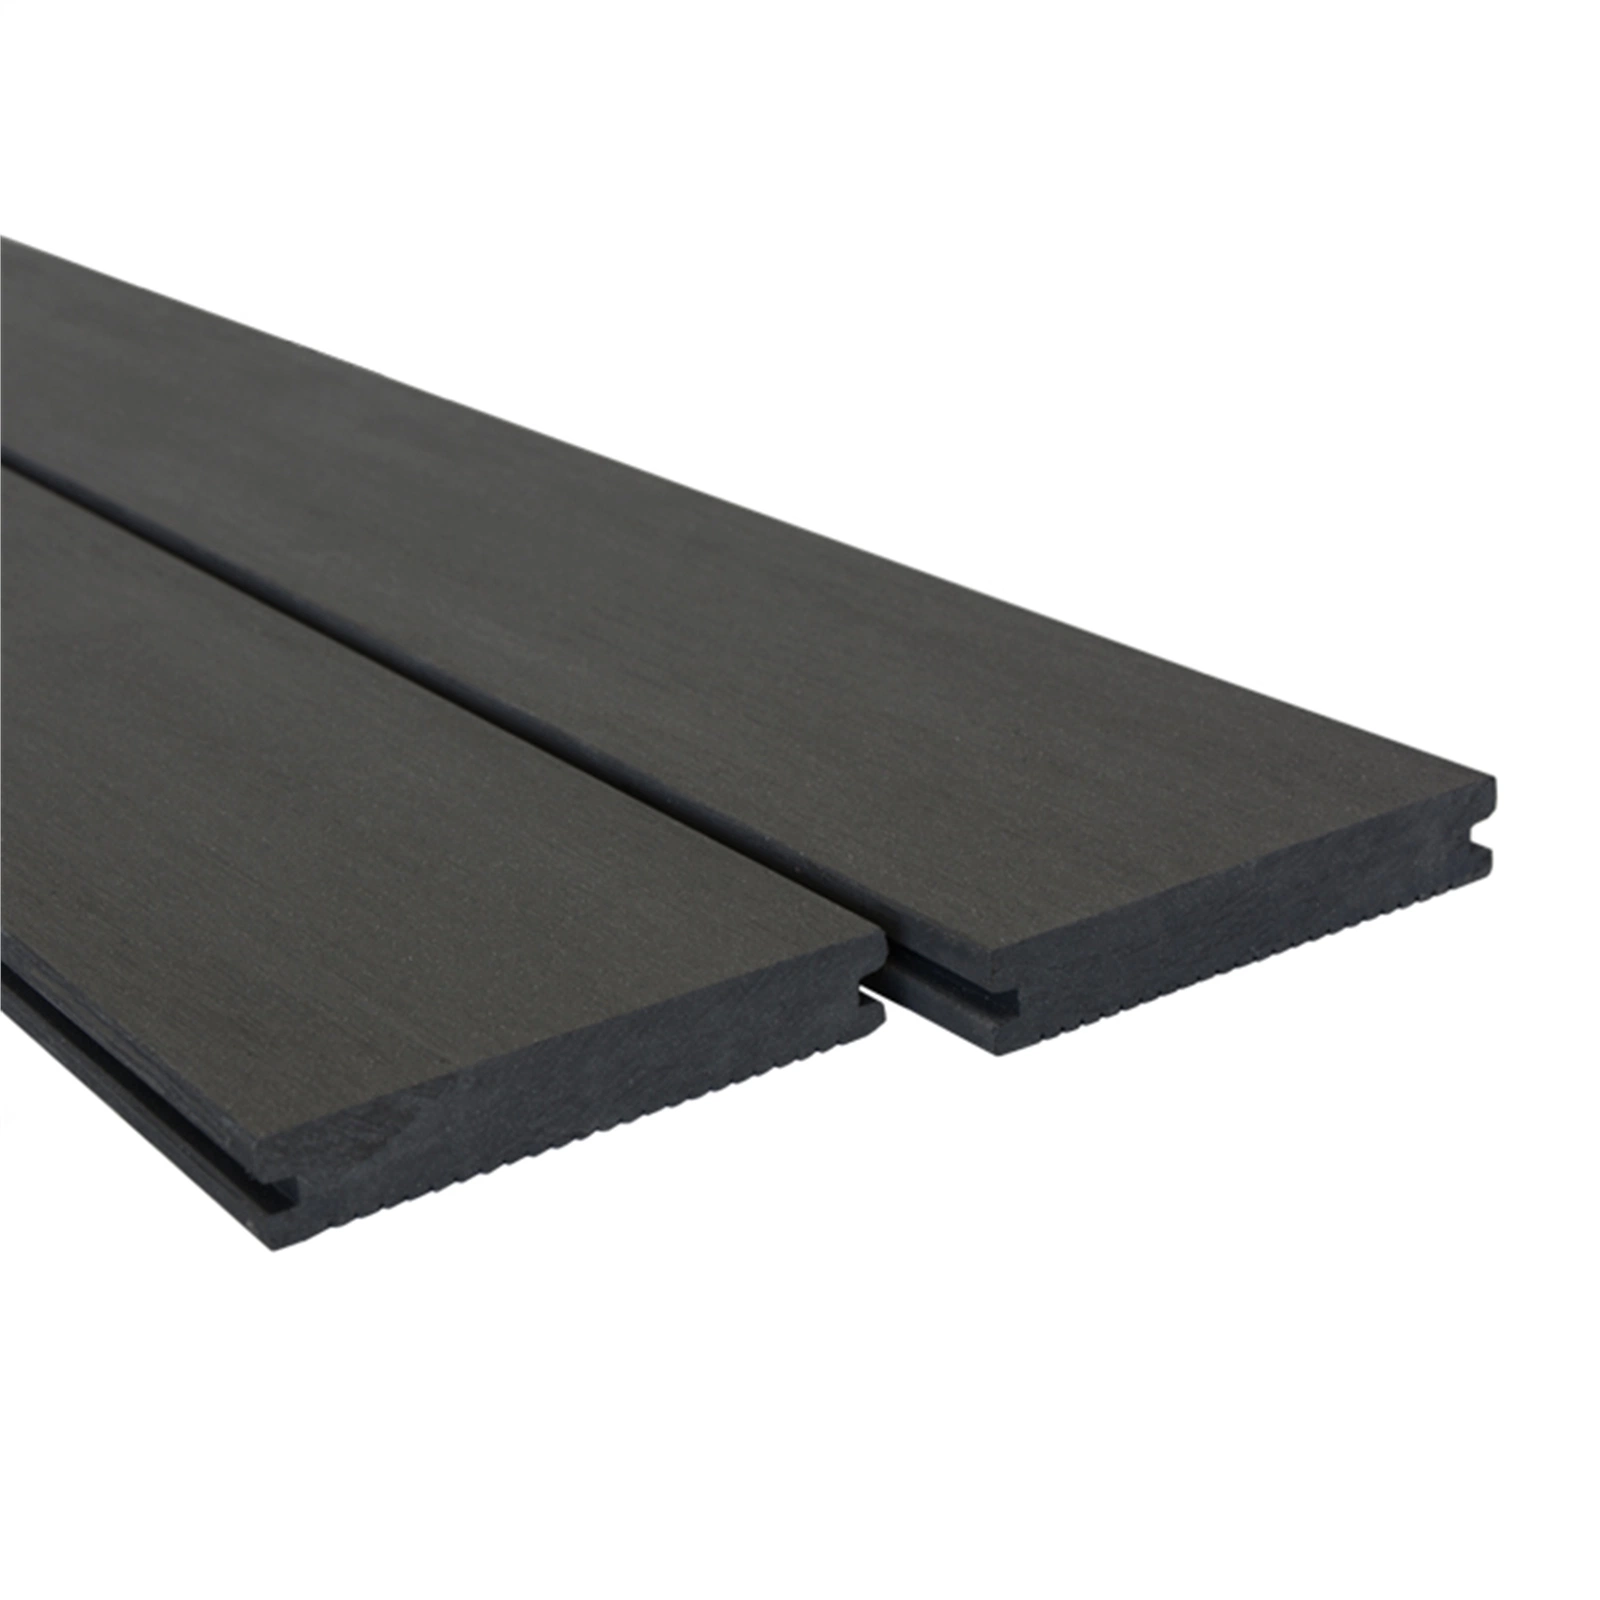 Ocox compuesto de plástico impermeable de madera maciza de madera pisos Revestimientos de WPC al aire libre